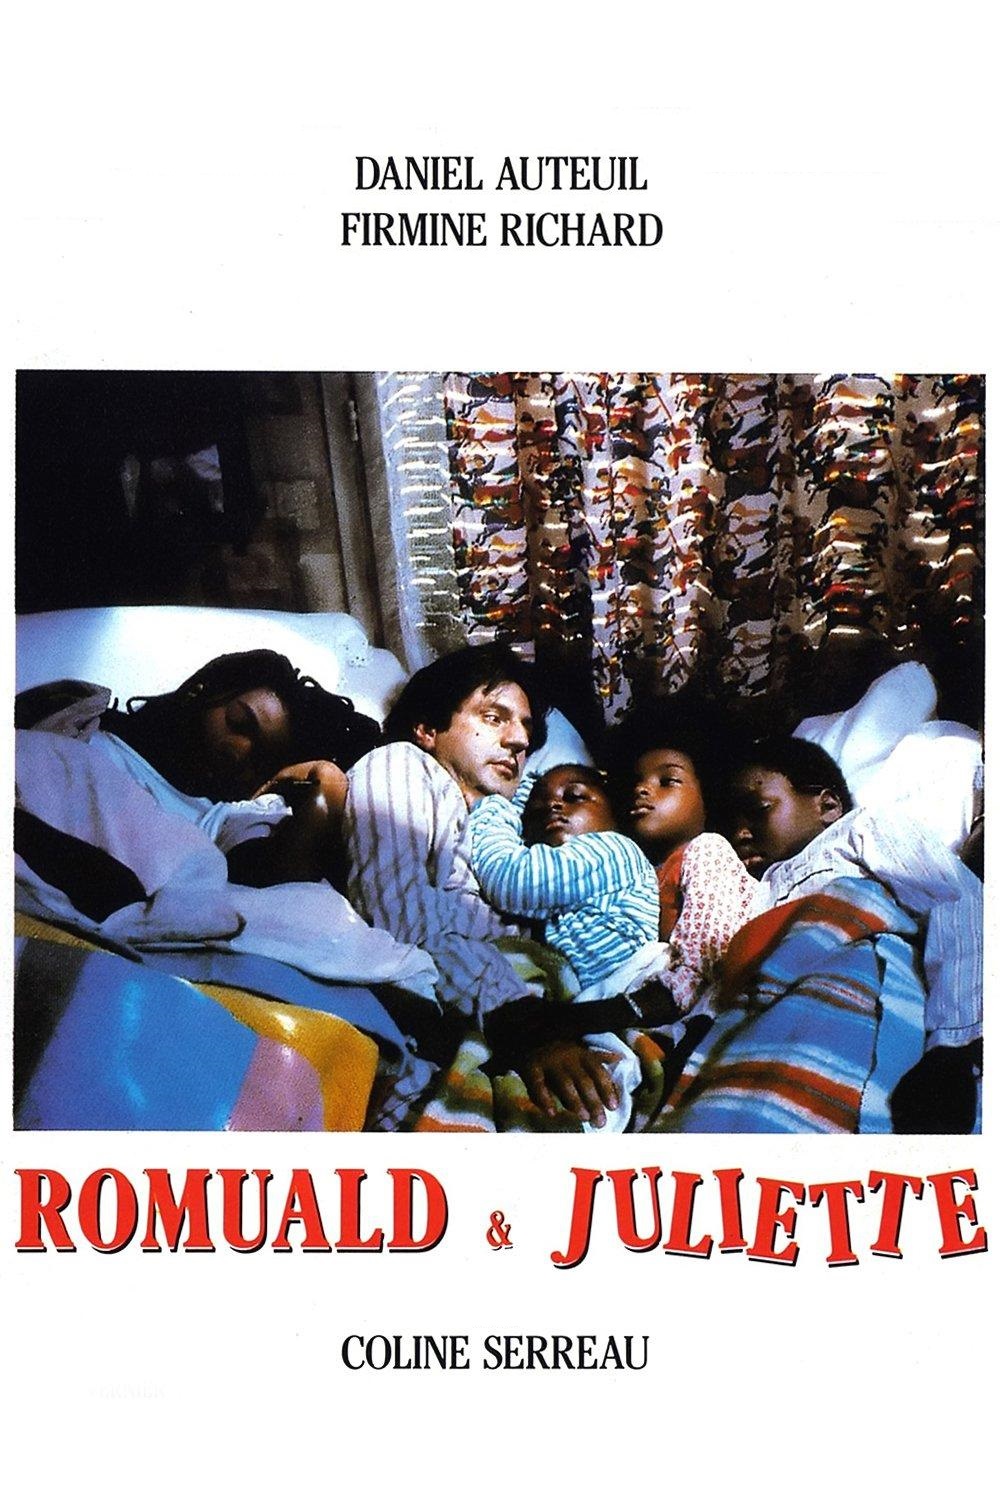 Romuald & Juliette (1988)